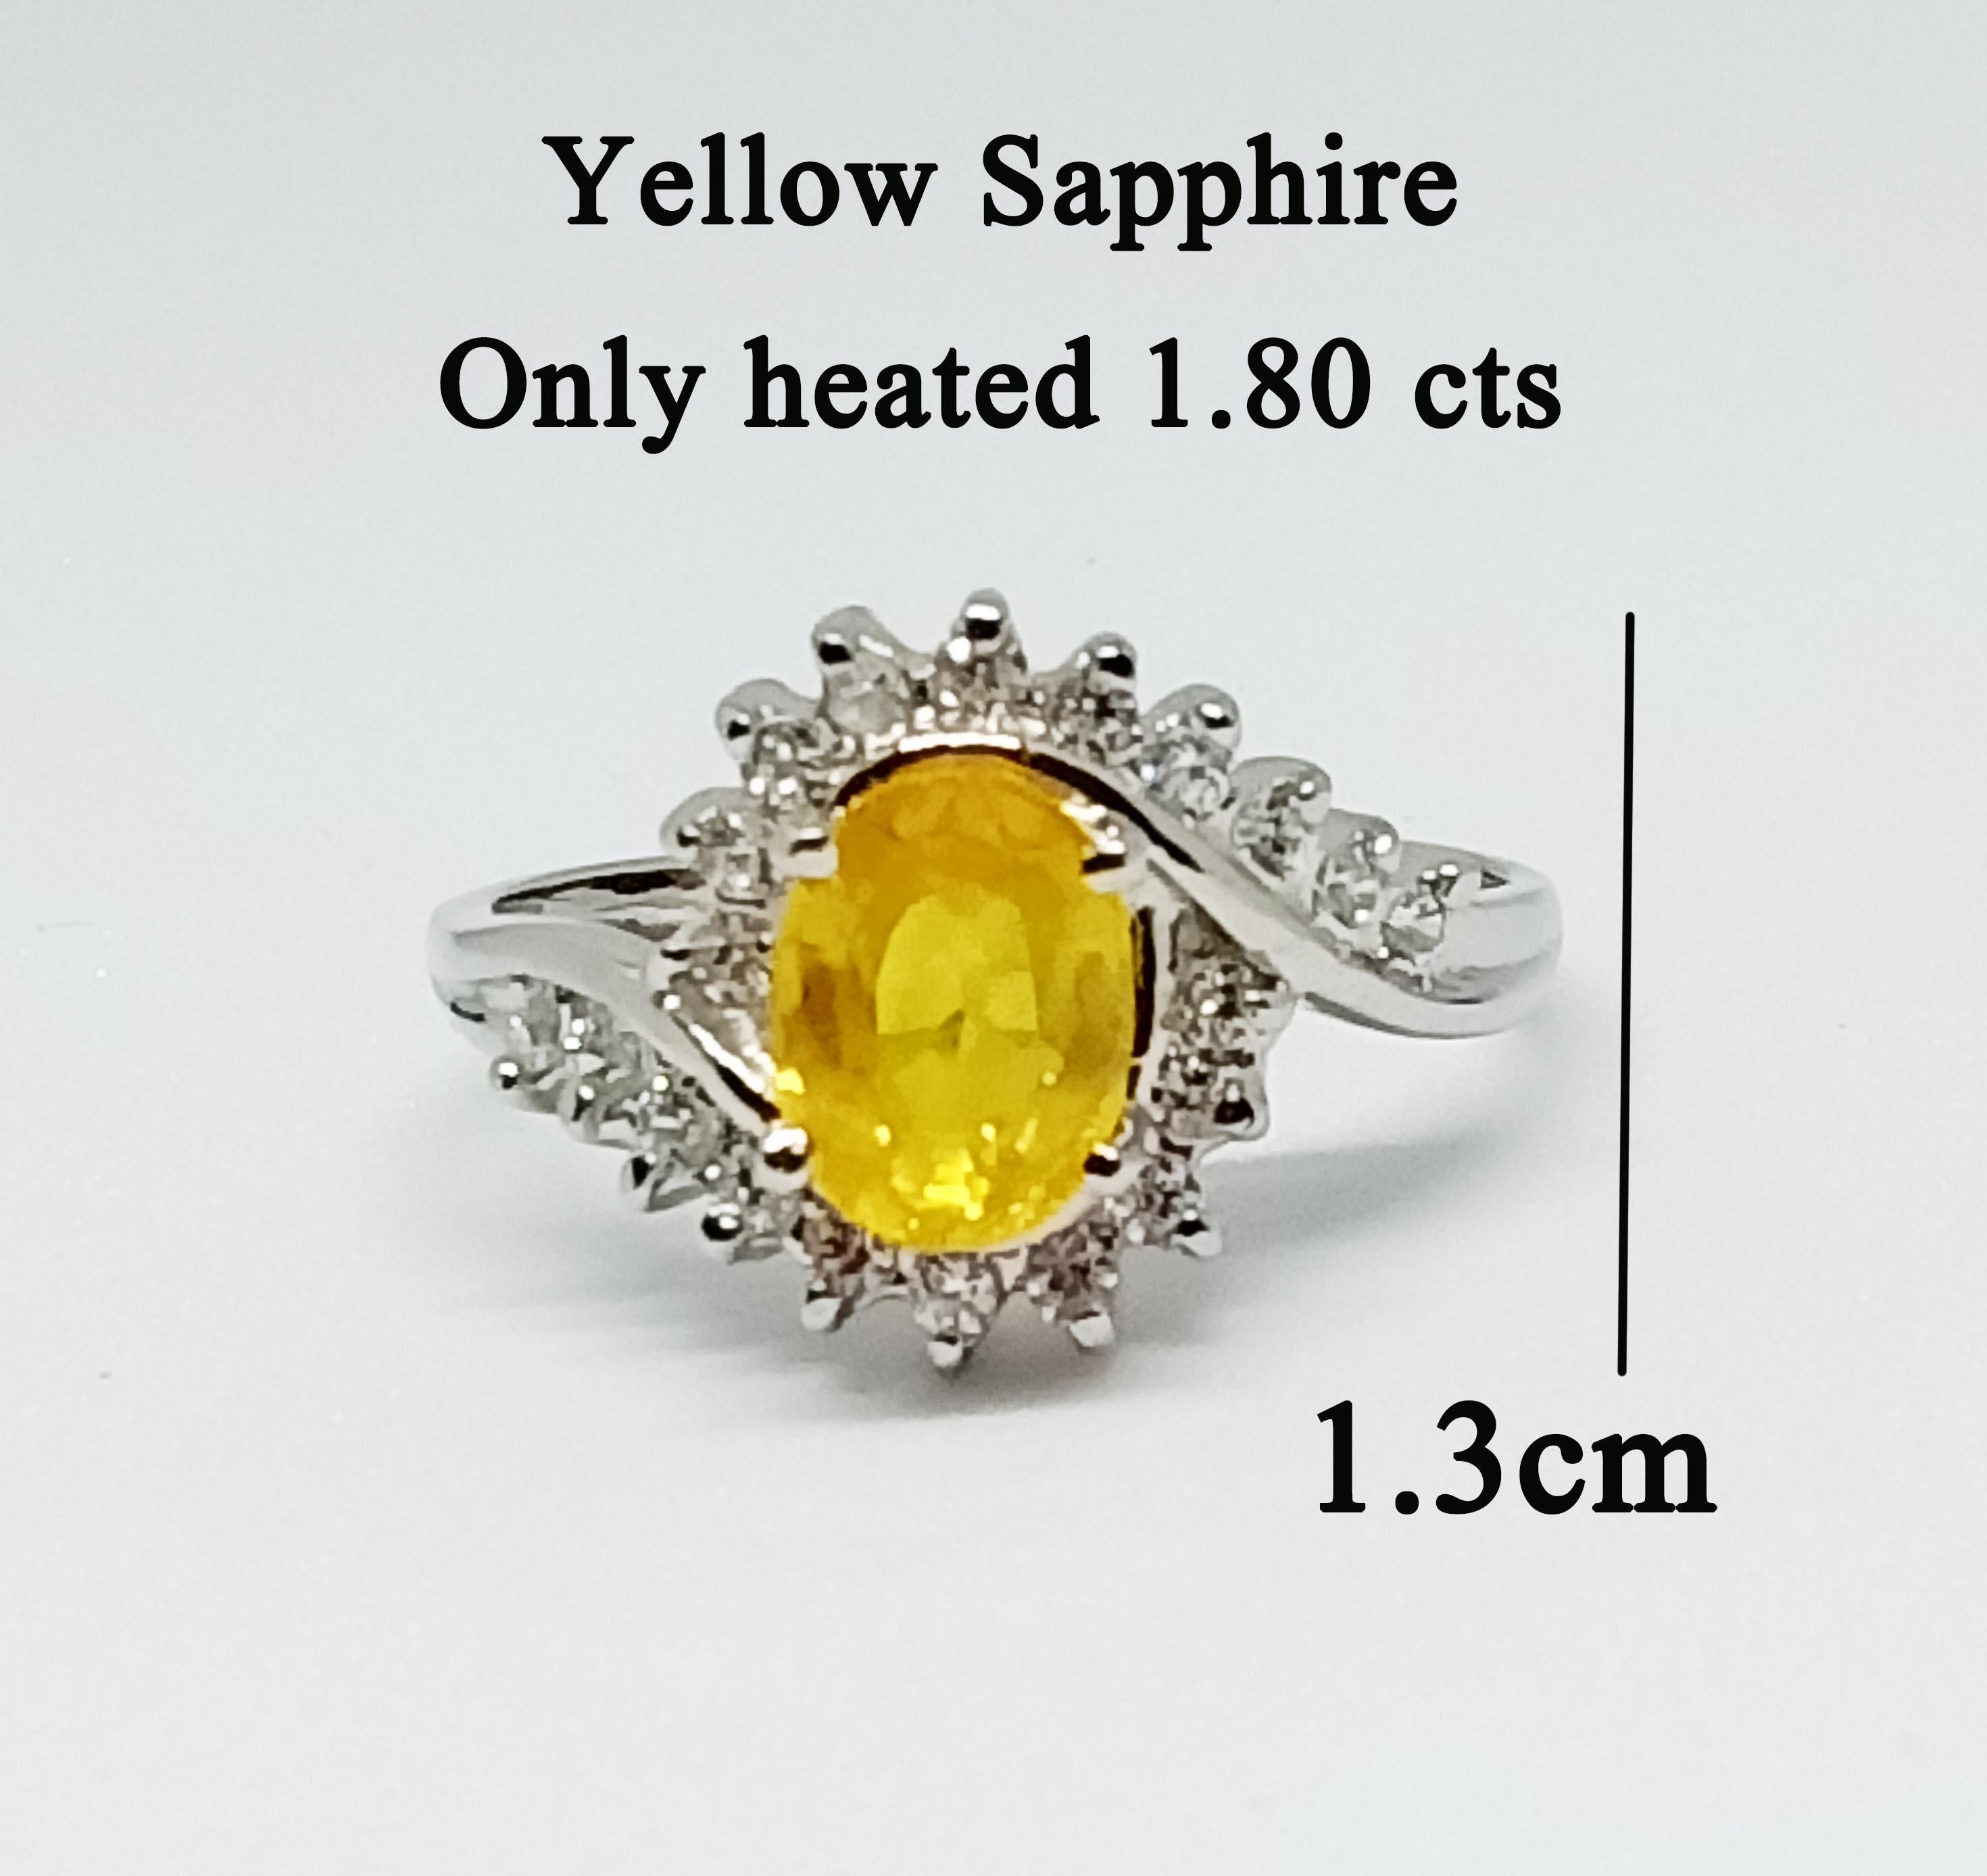 Saphir jaune ovale 1,80 cts  taille 8x6 mm. Seulement chauffé 
Zircon blanc rond 1,5 mm. 18 pièces.
Sur argent sterling plaqué or blanc 18K.
Métal argenté
